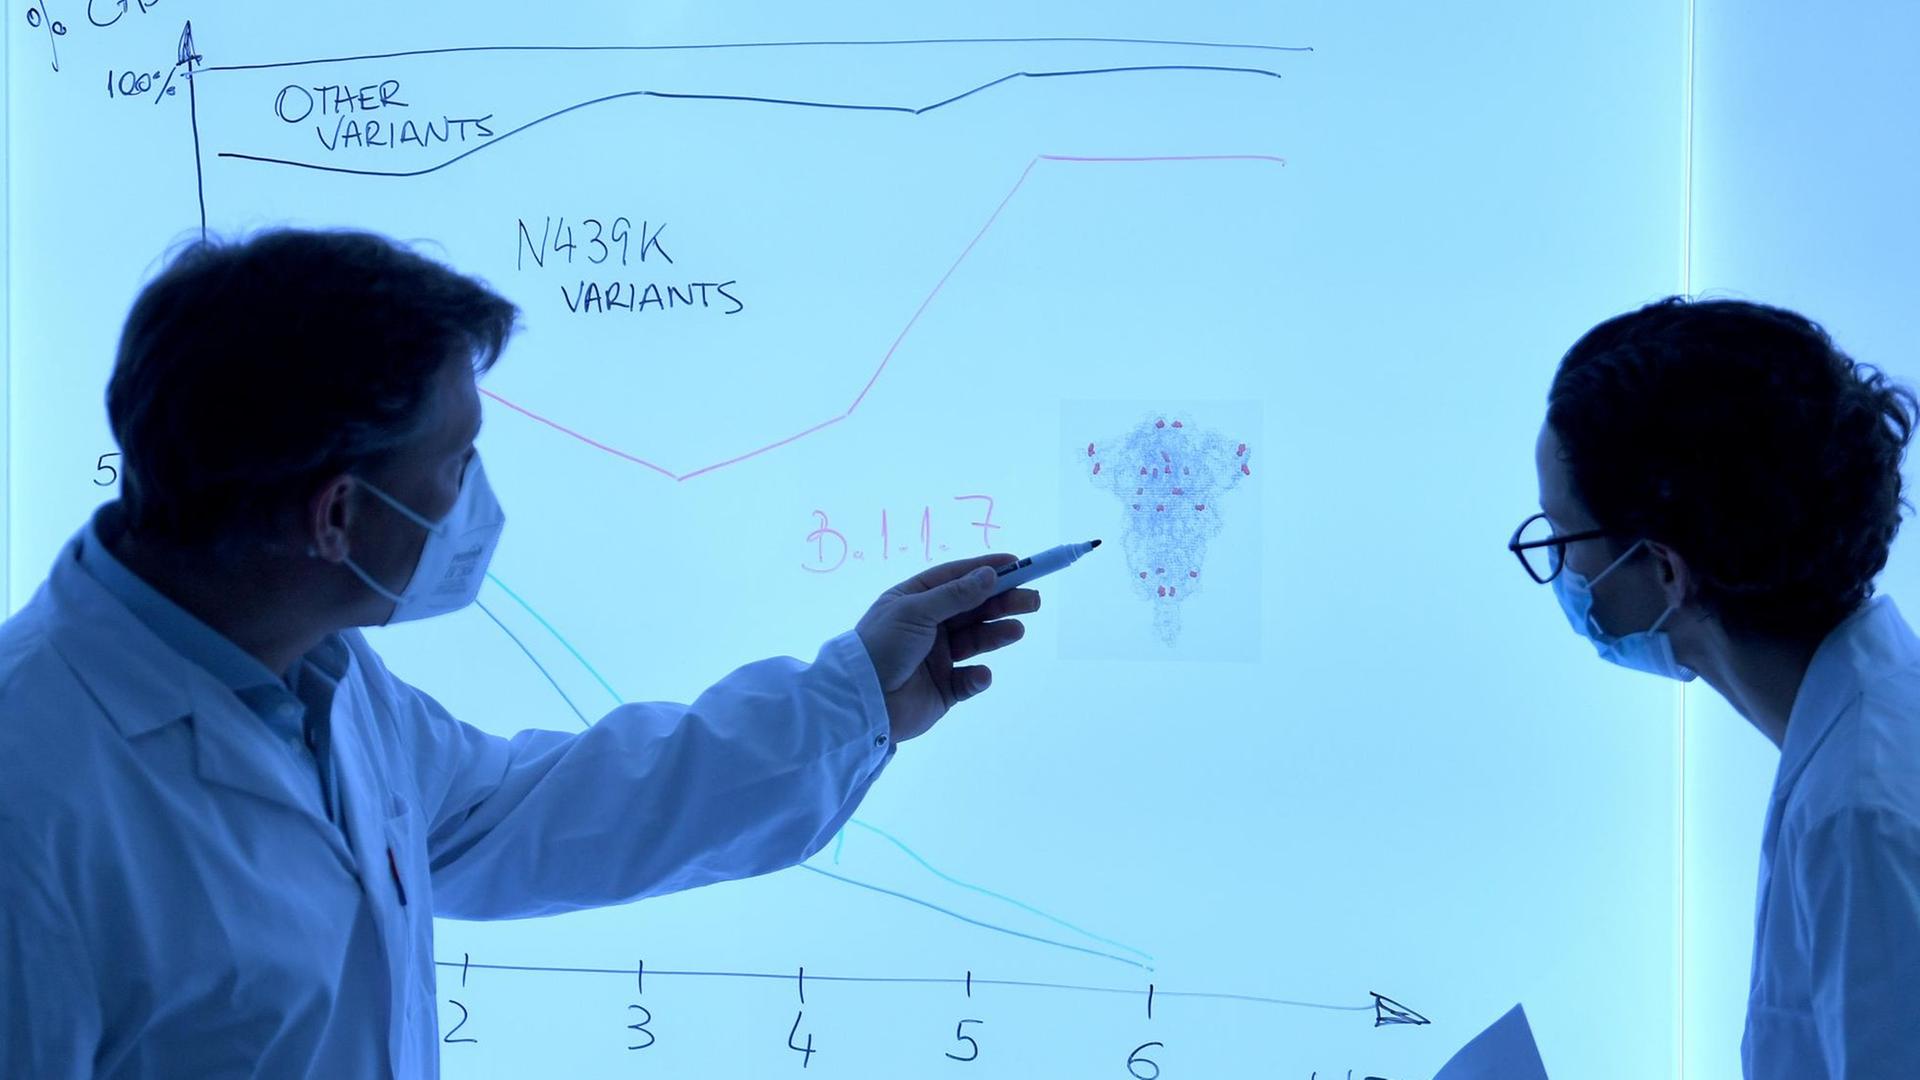 Eine Wissenschaftlerin und ein Wissenschaftler - beide mit weißem Kittel und Atemschutzmaske bekleidet - diskutieren vor einer weißen Tafel, auf die ein Diagramm gezeichnet ist. Das Diagramm zeigt mögliche Mutationsverläufe des Coronavirus.